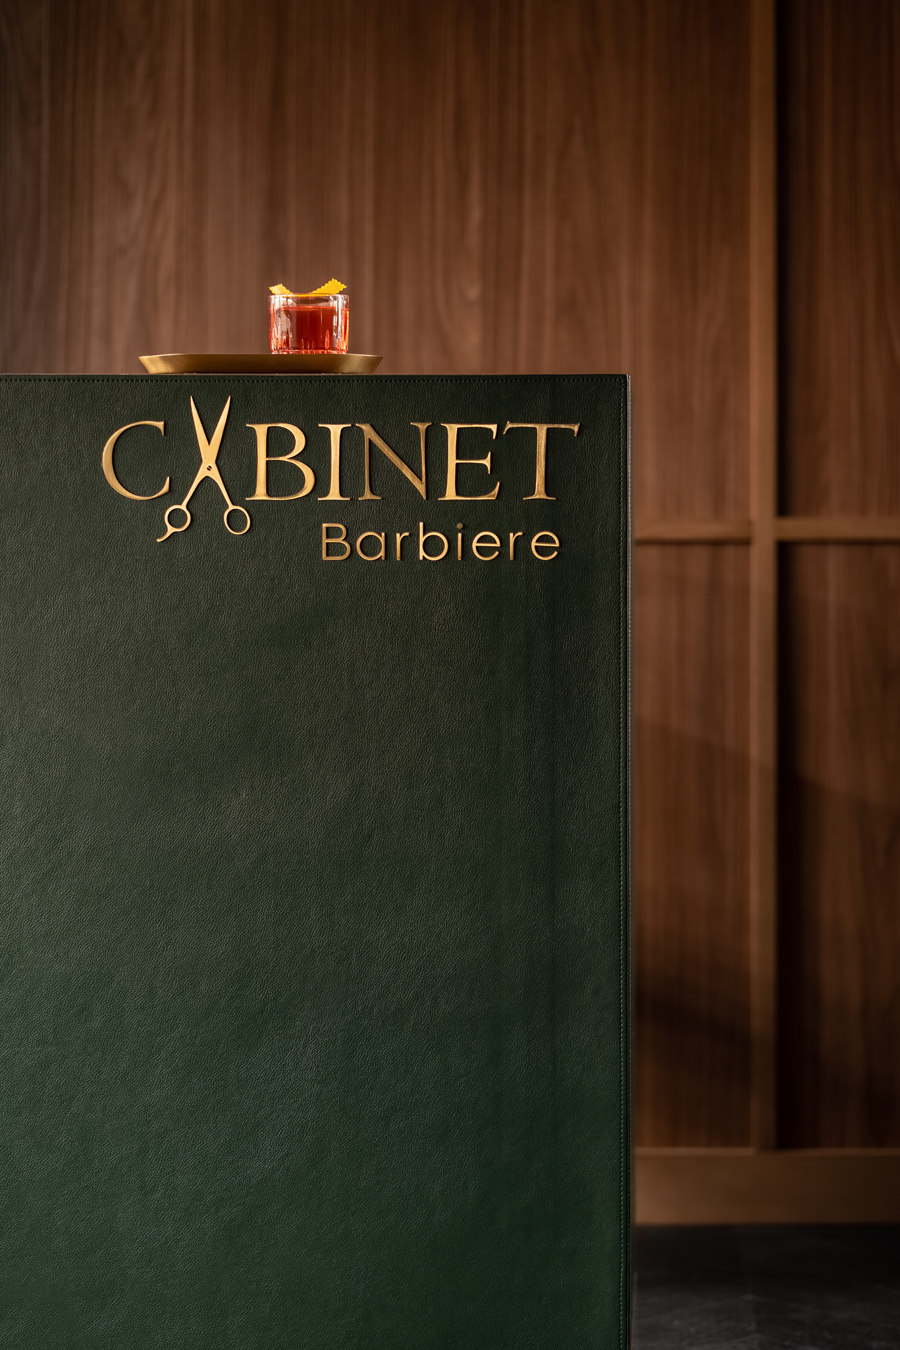 Cabinet Barbiere by Bogdanova Bureau | Spa facilities